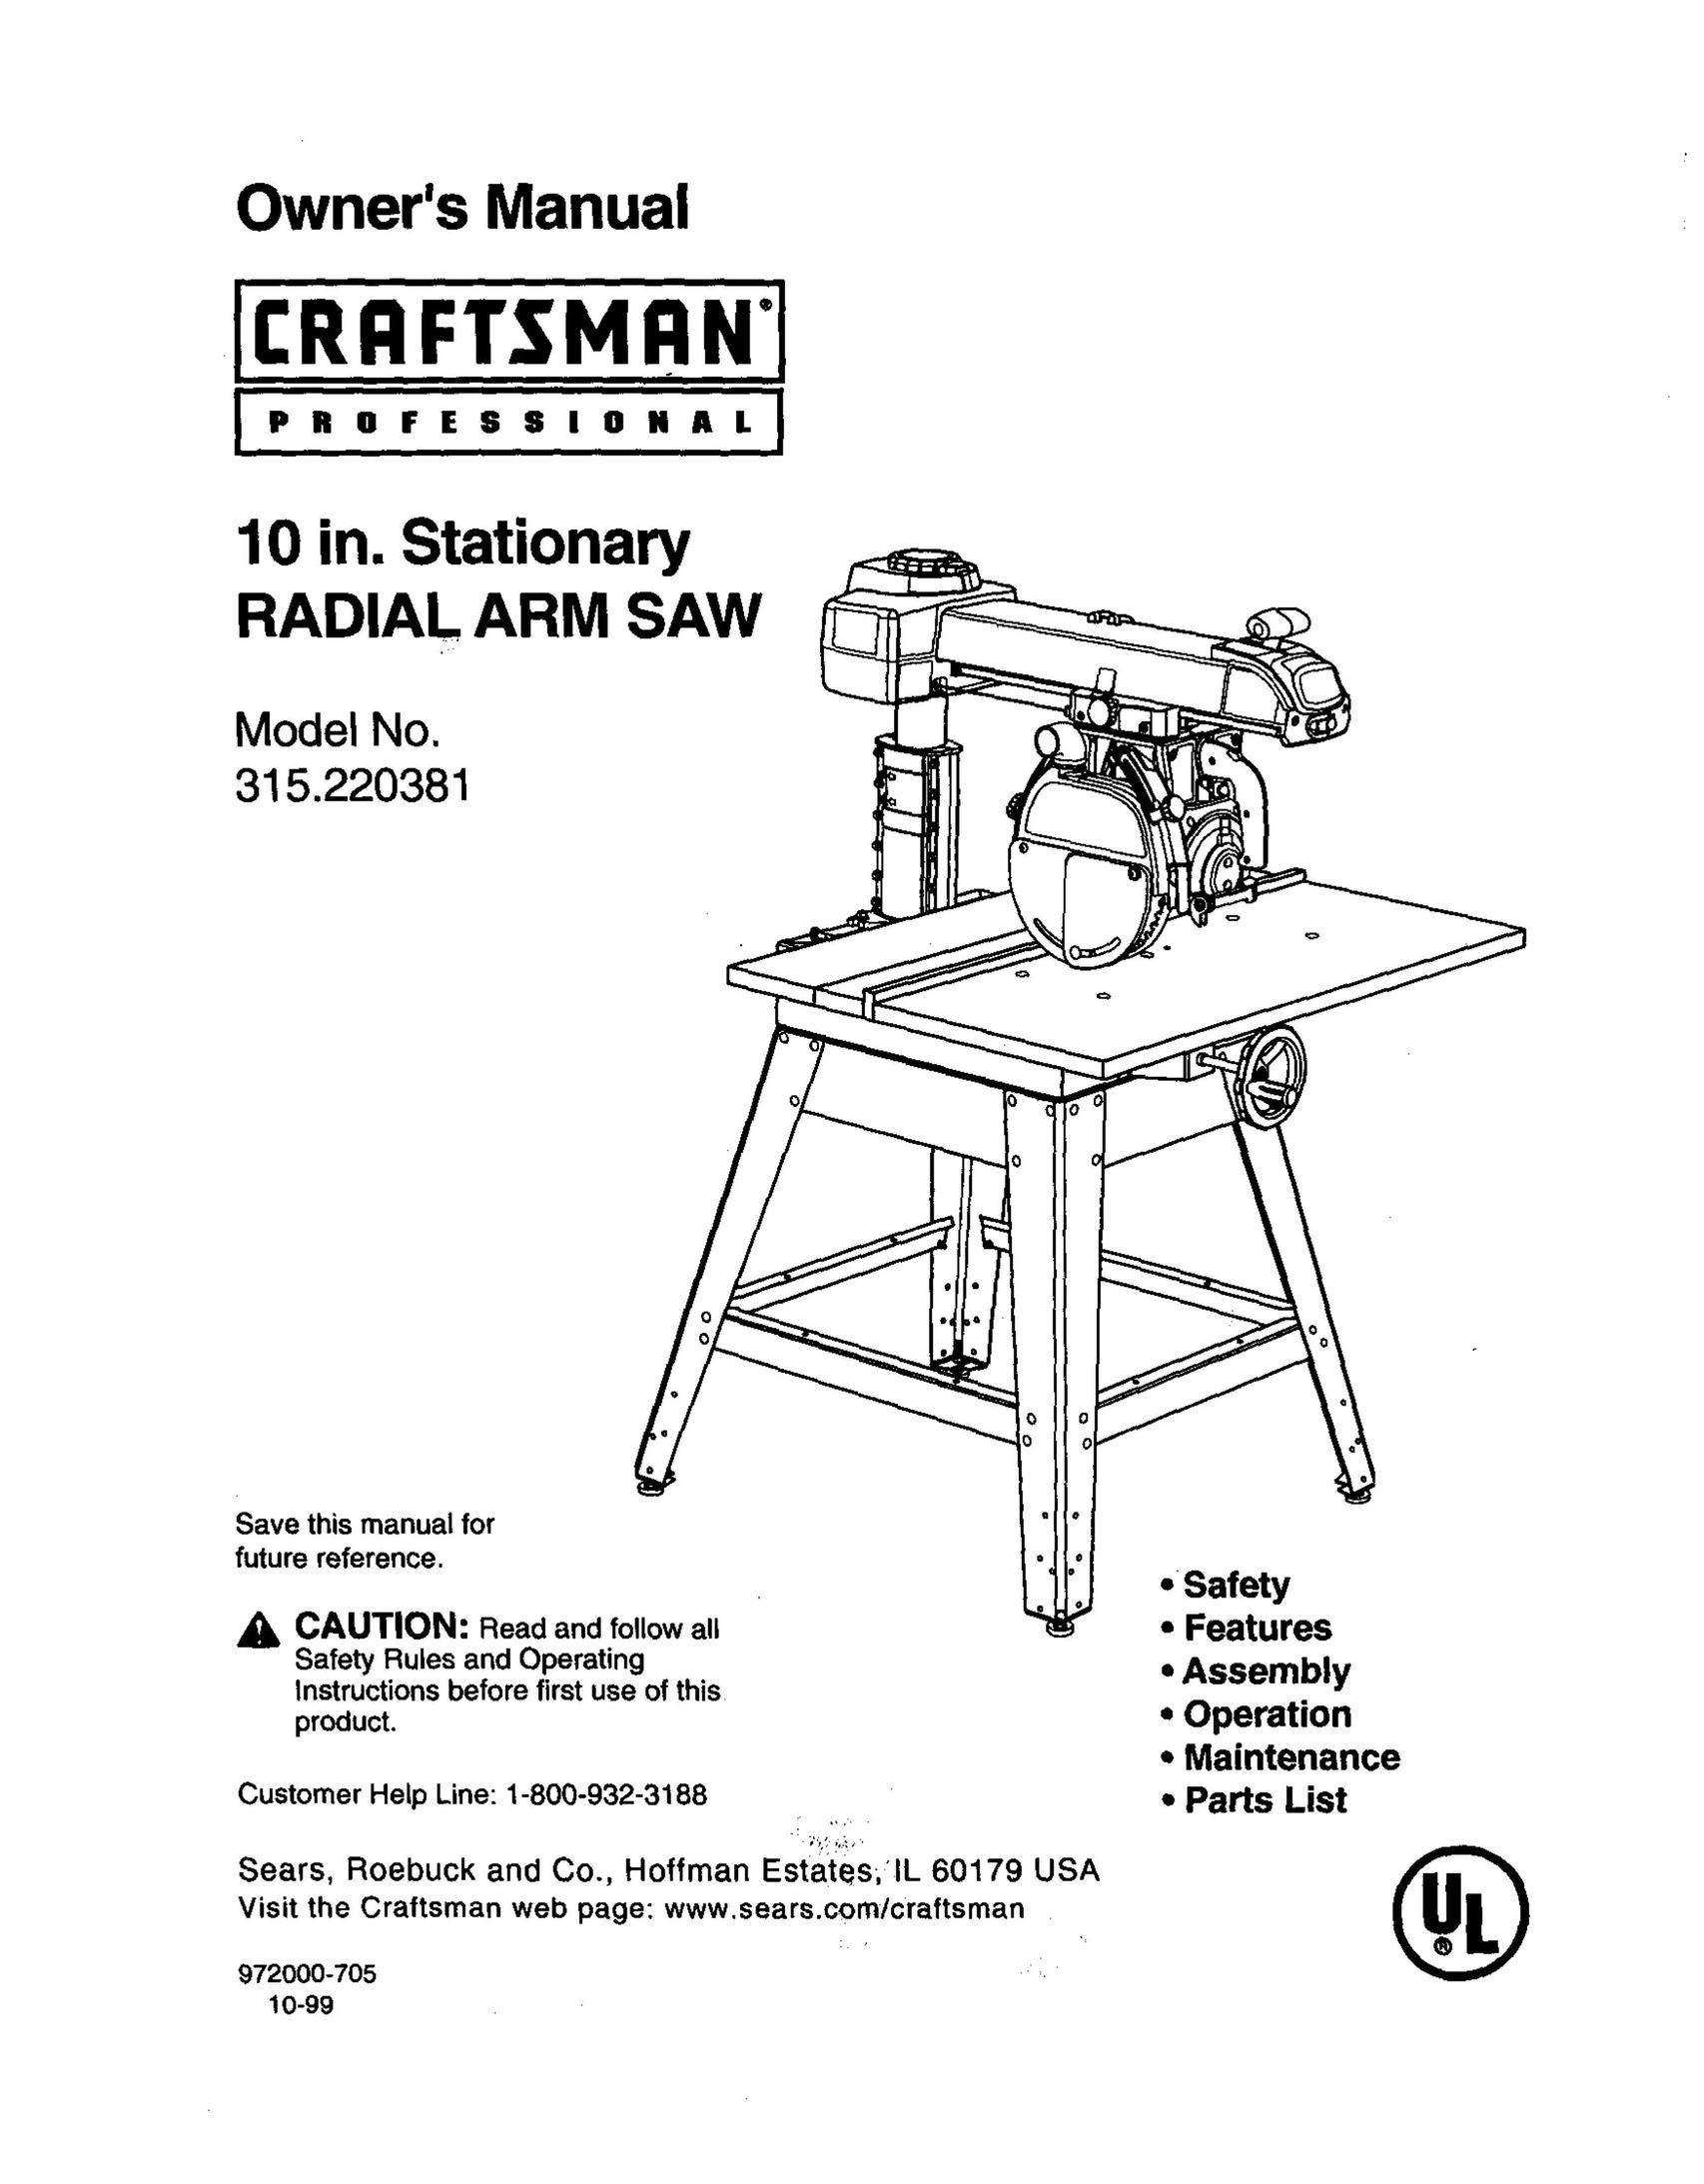 Craftsman 315.220381 Saw User Manual